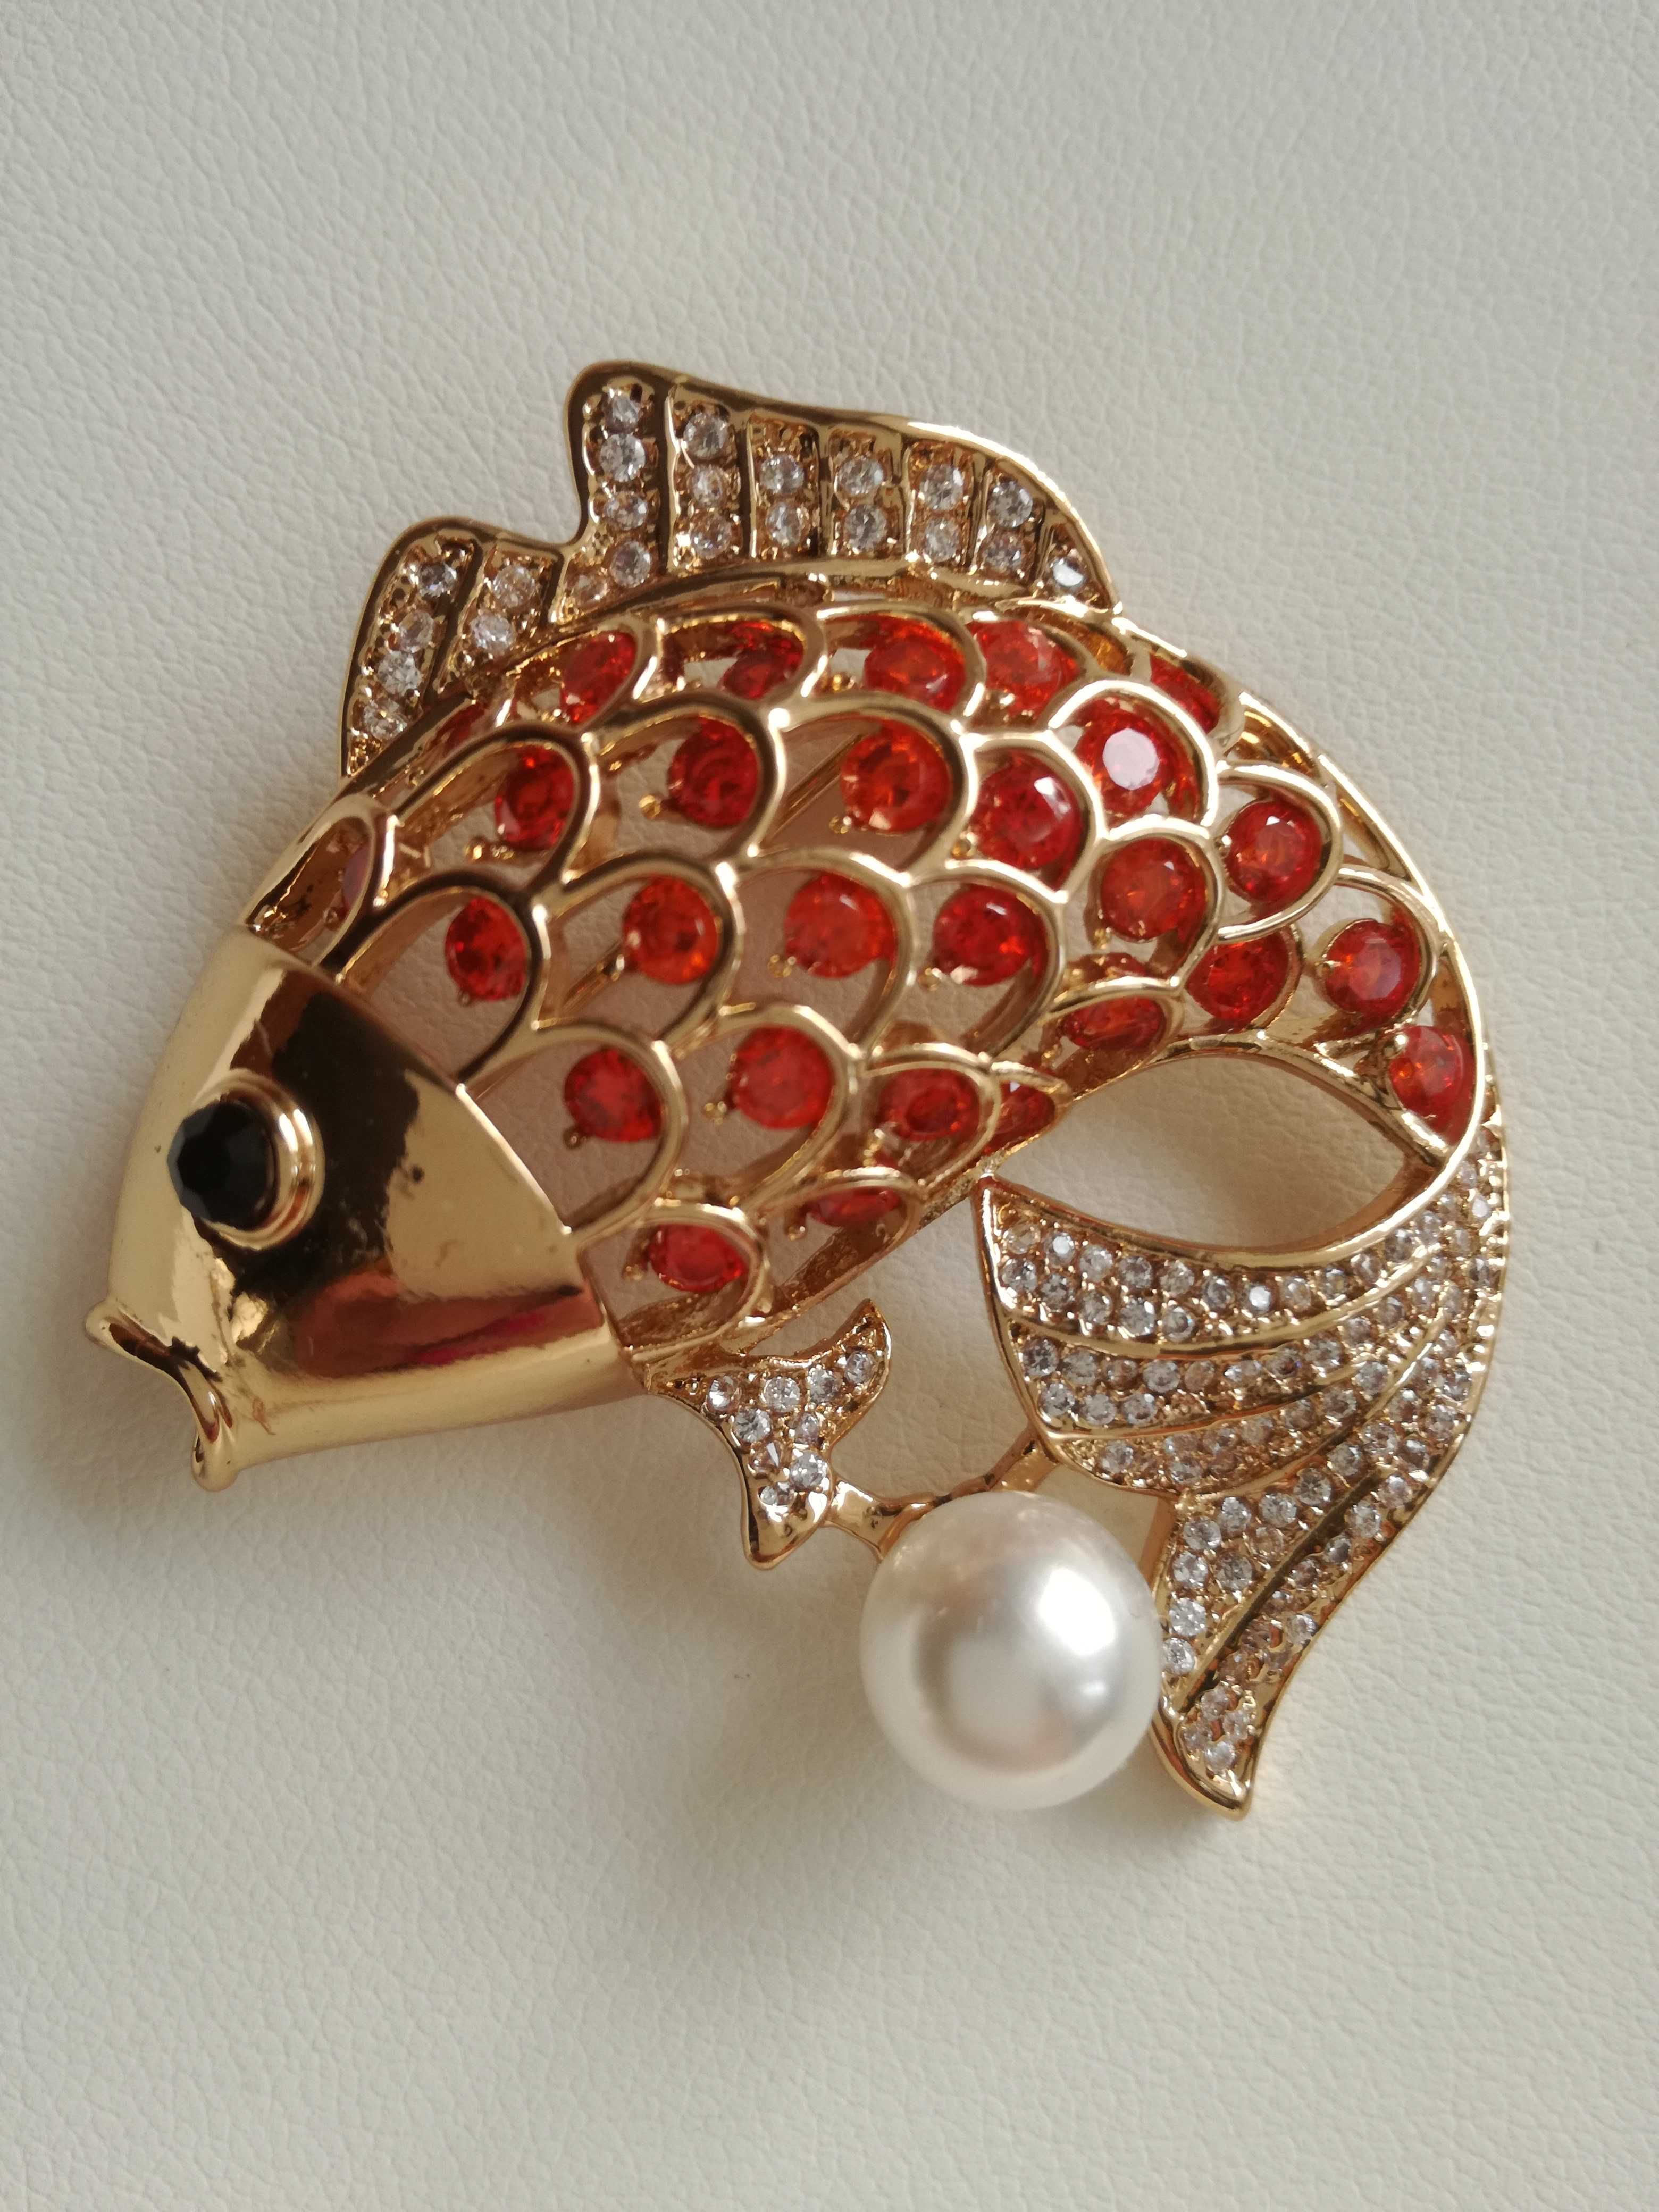 USA_BROSZKA/ZAWIESZKA_nieszablonowa biżuteria- złota rybka z perłą